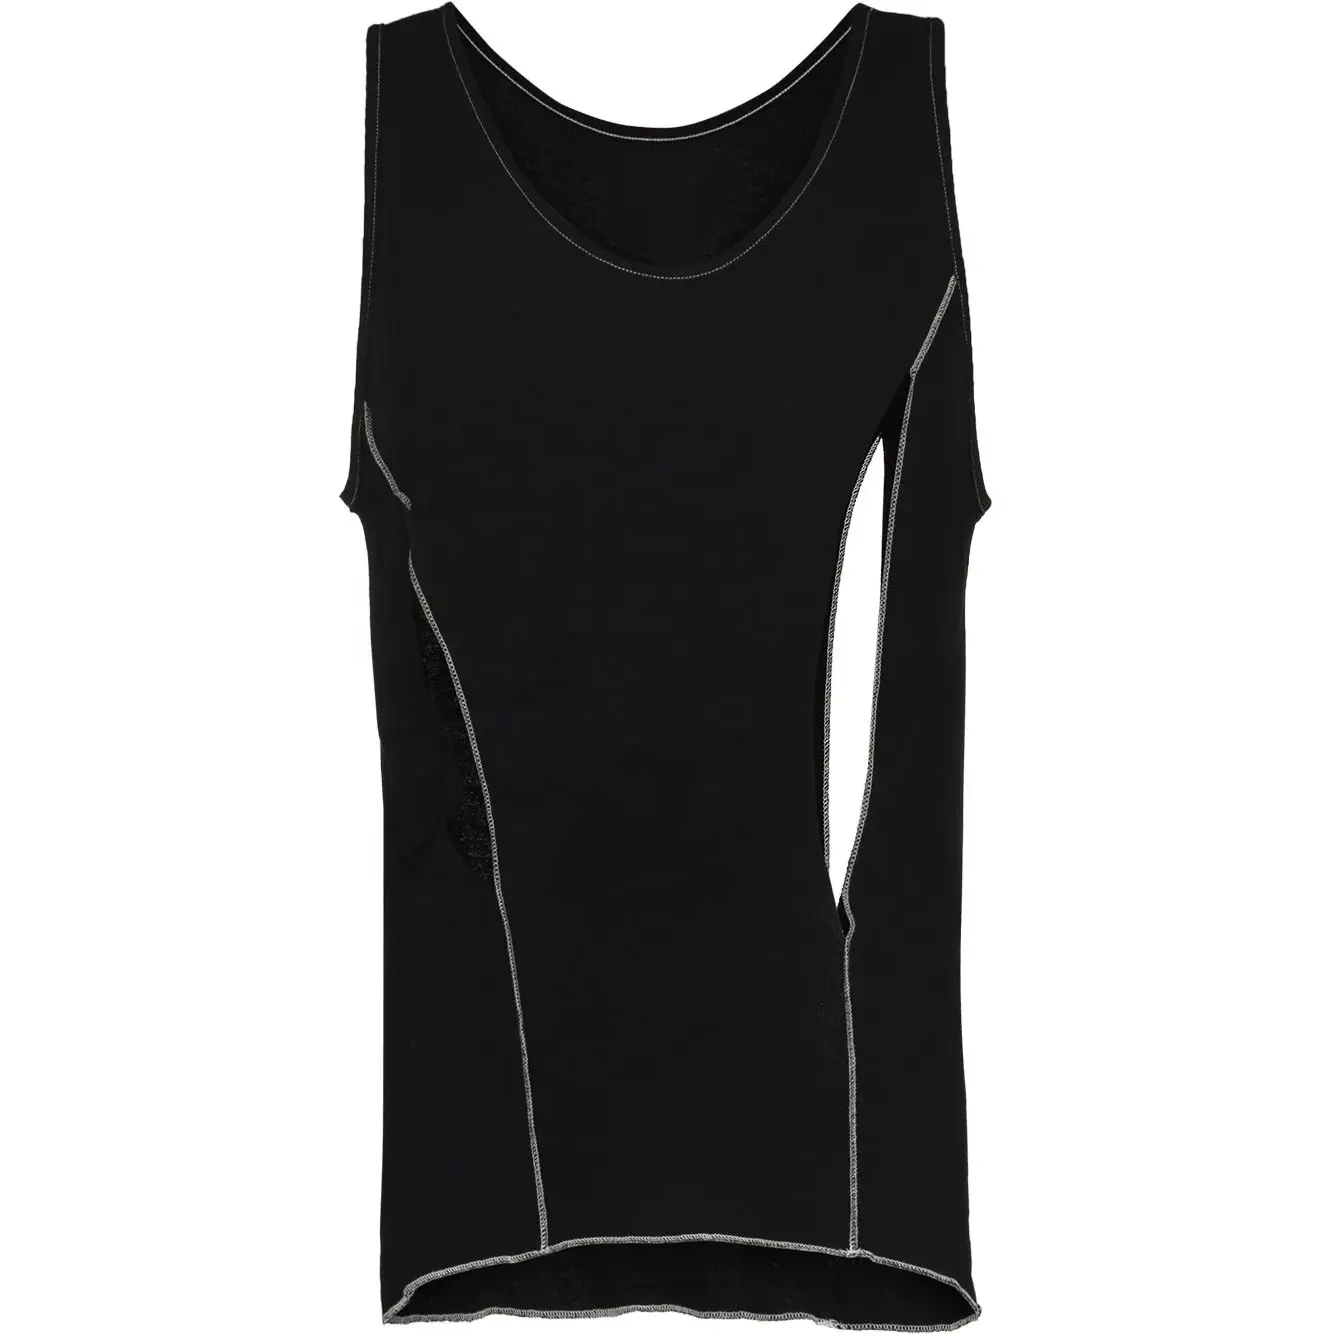 Men cotton vest solid colors blank plain cotton running gym vest customized free design t shirt